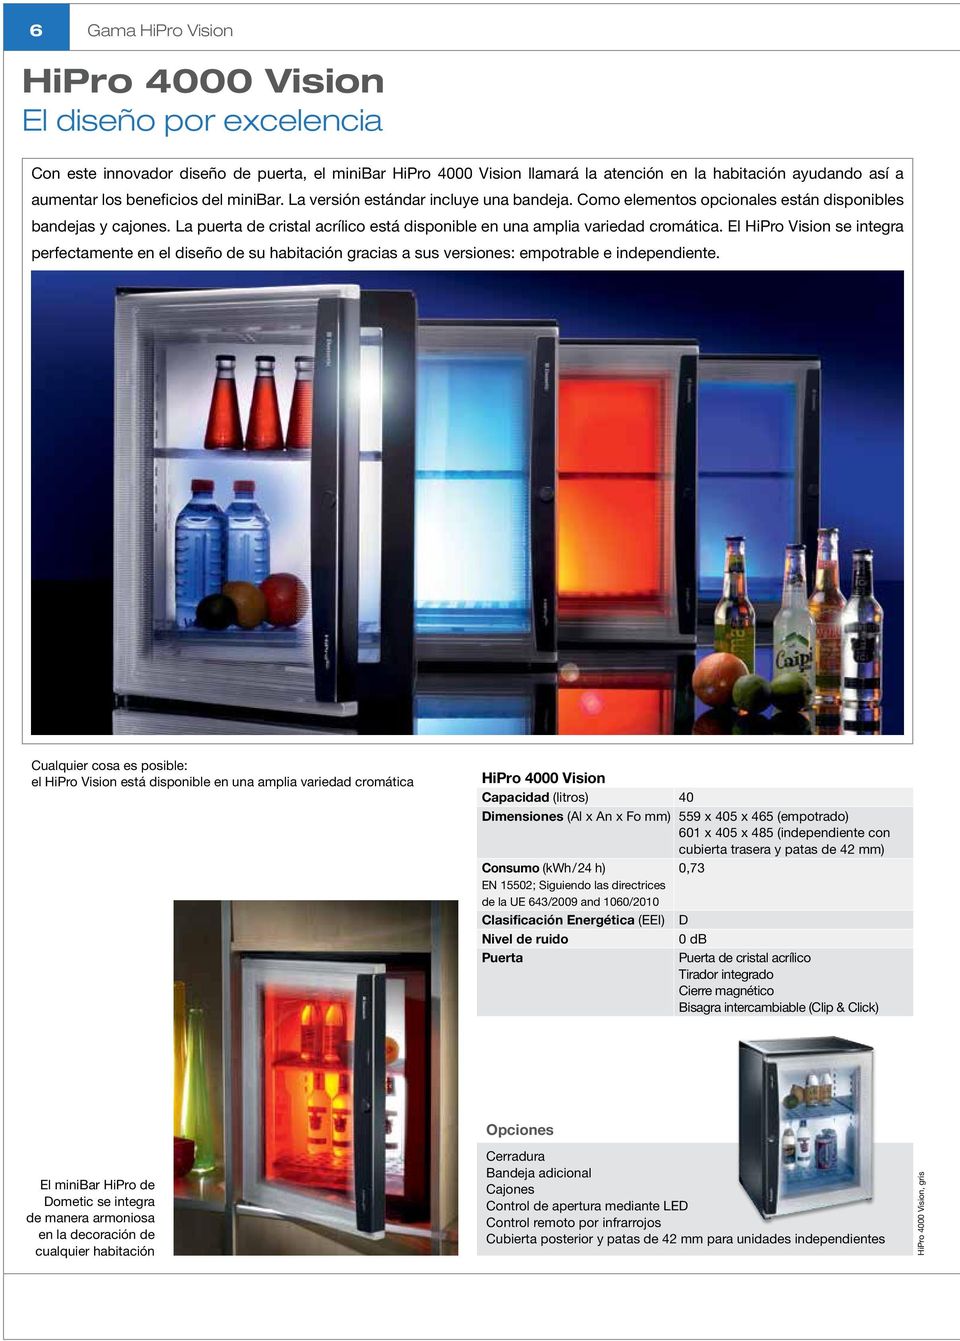 La puerta de cristal acrílico está disponible en una amplia variedad cromática.